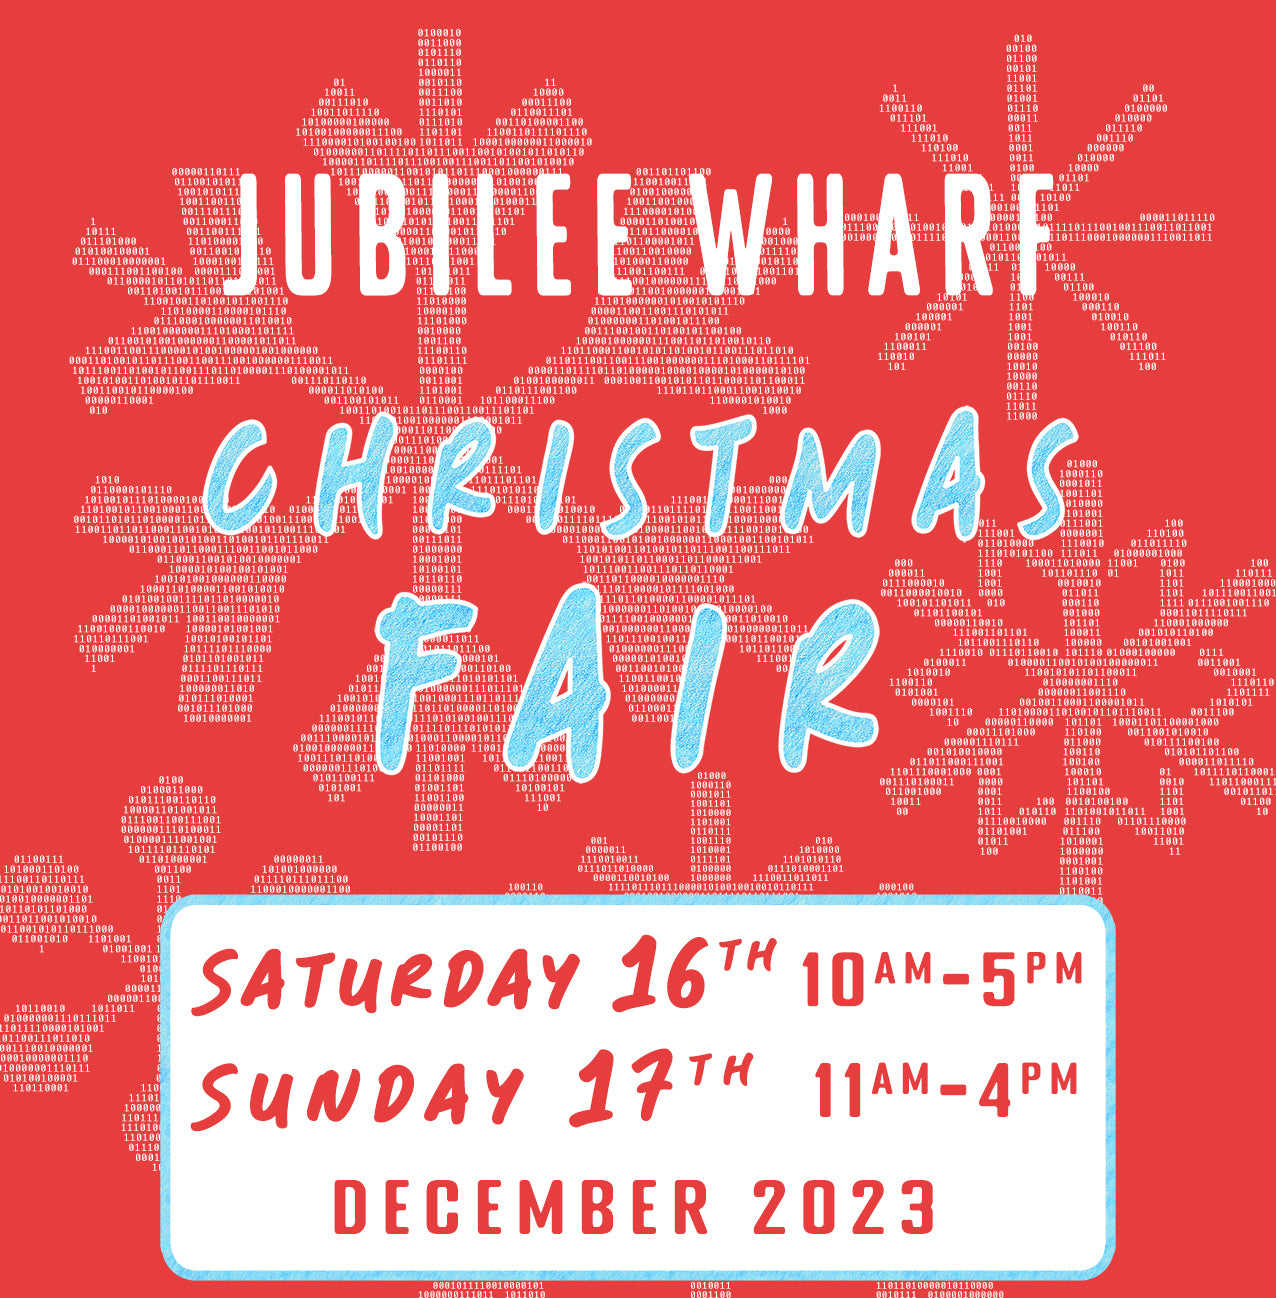 Jubilee Wharf Christmas Fair 2023